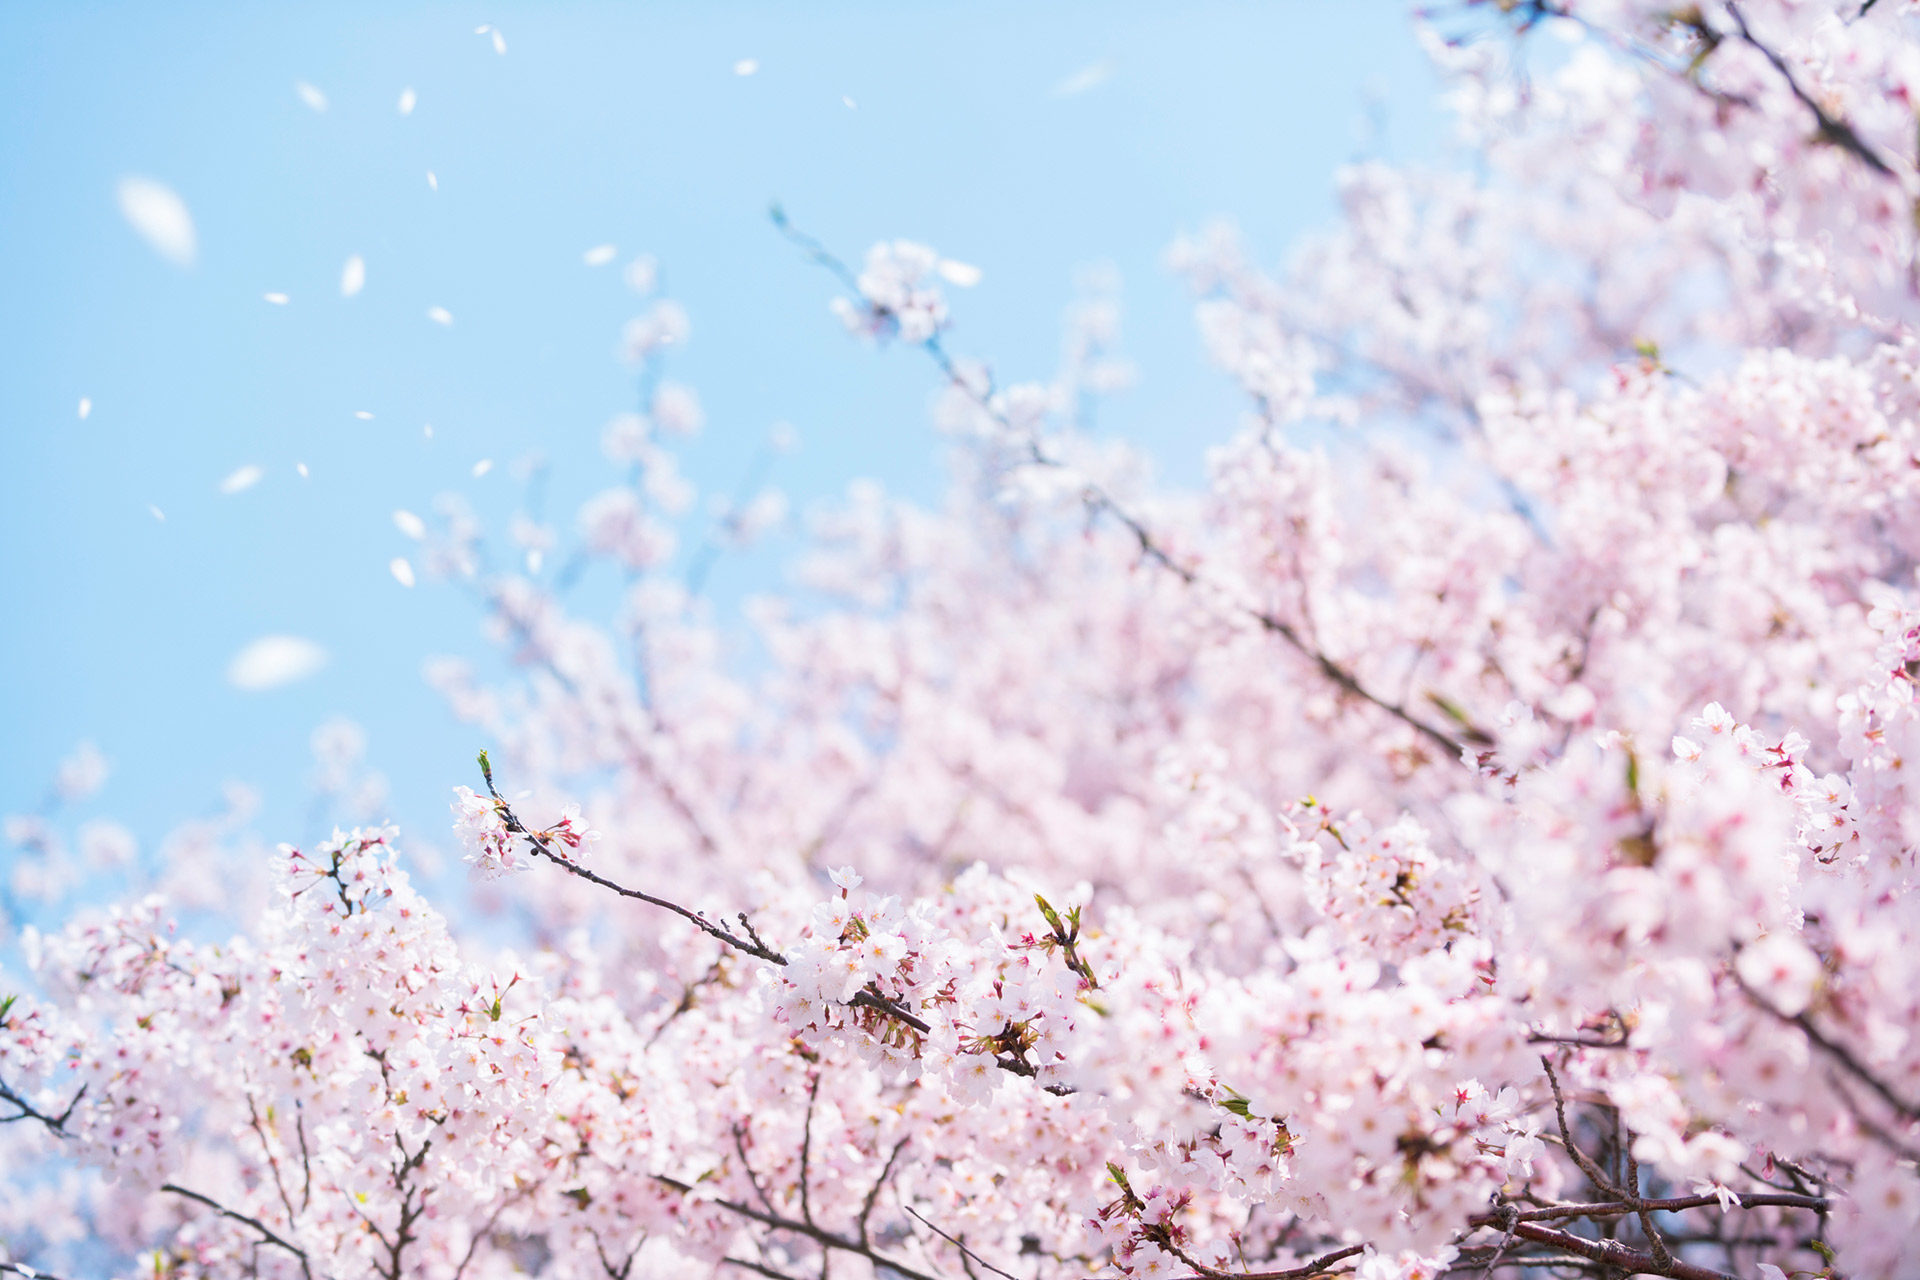 今年は桜を見られなかったと諦めてしまっているあなたにおすすめ 京都で遅咲きの桜の名所で 少し遅めの春を感じてみてはいかがでしょうか Caedekyoto カエデ京都 紅葉と伝統美を引き継ぐバッグ